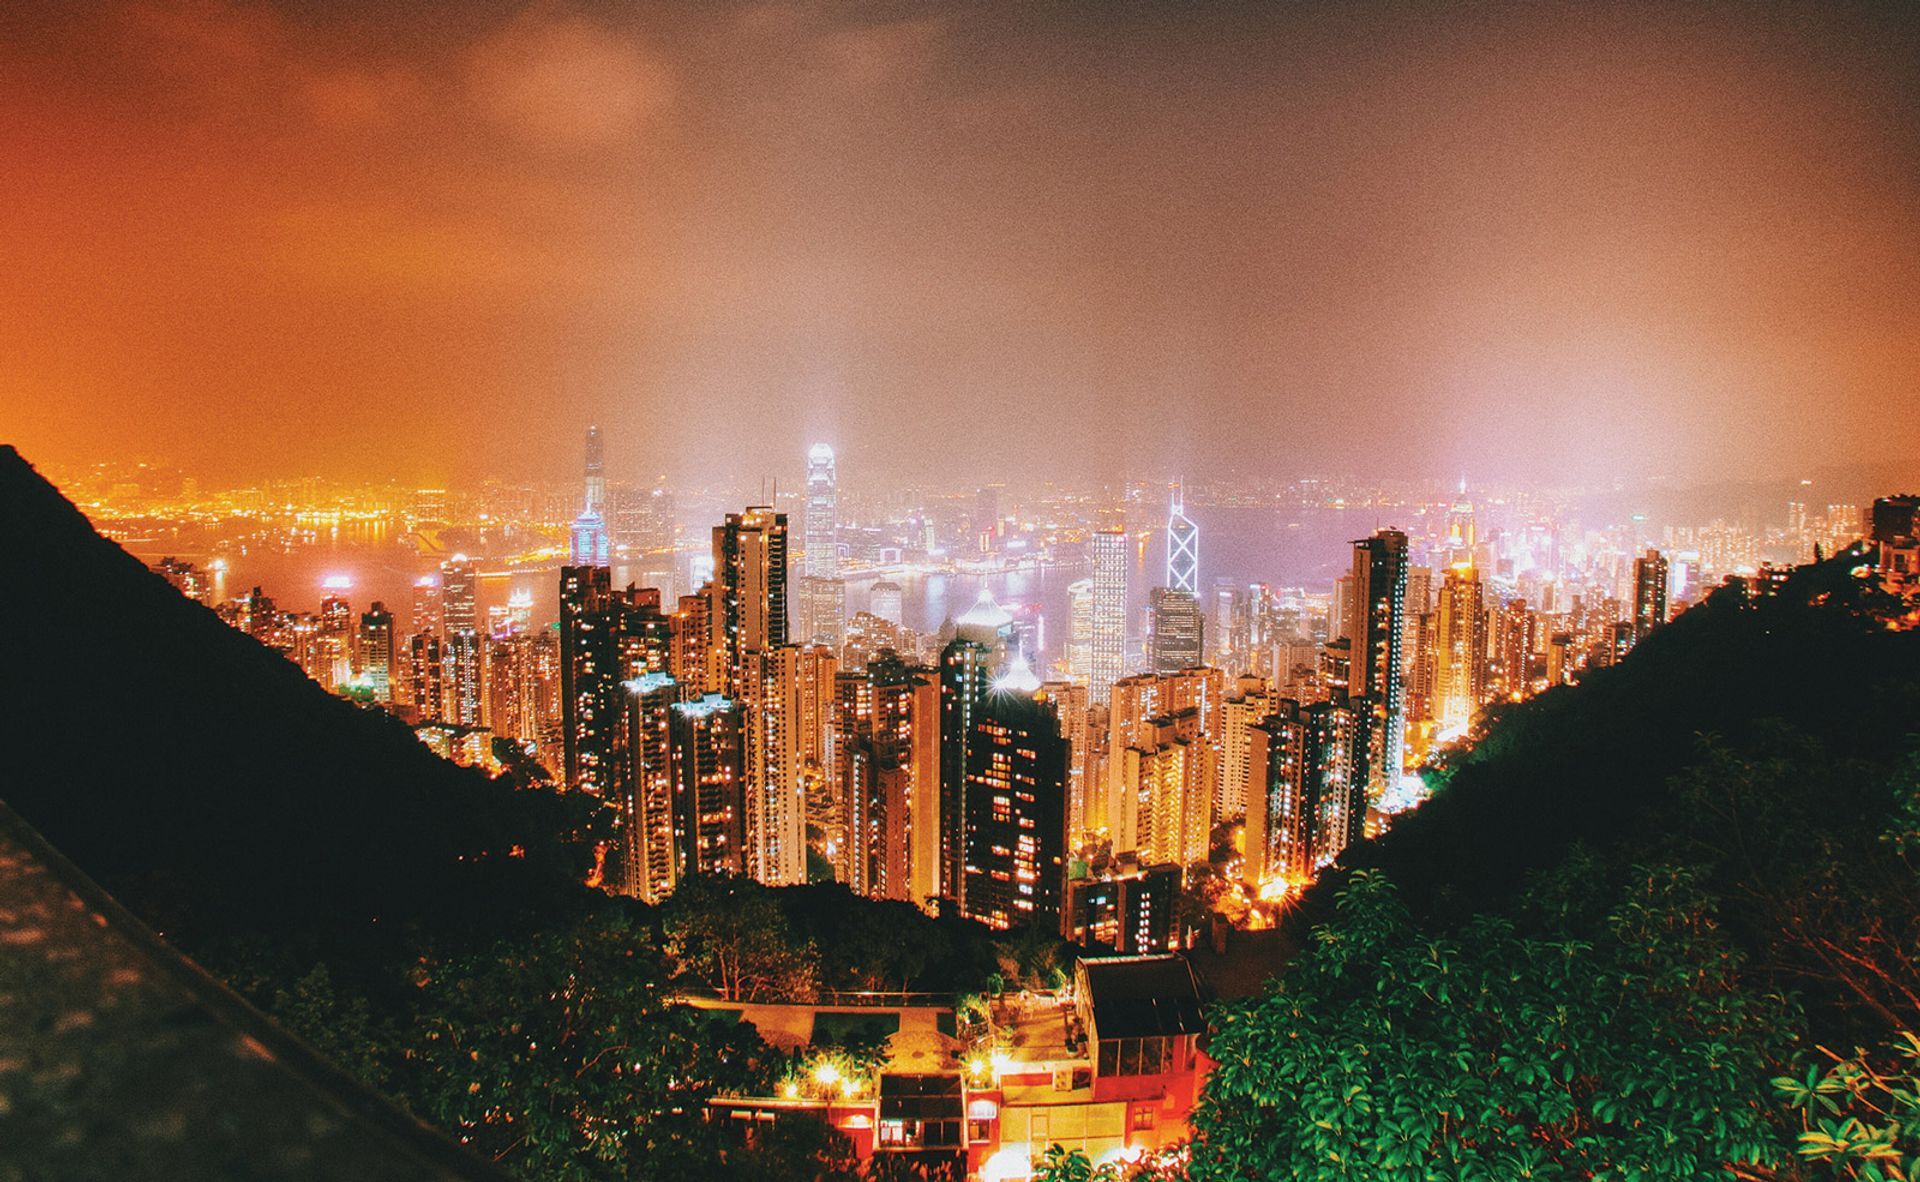 בעוד בייג'ין יורדת חזק על חופש הביטוי בהונג קונג, שוק האמנות פורח 

© קרל ננזן לובן


